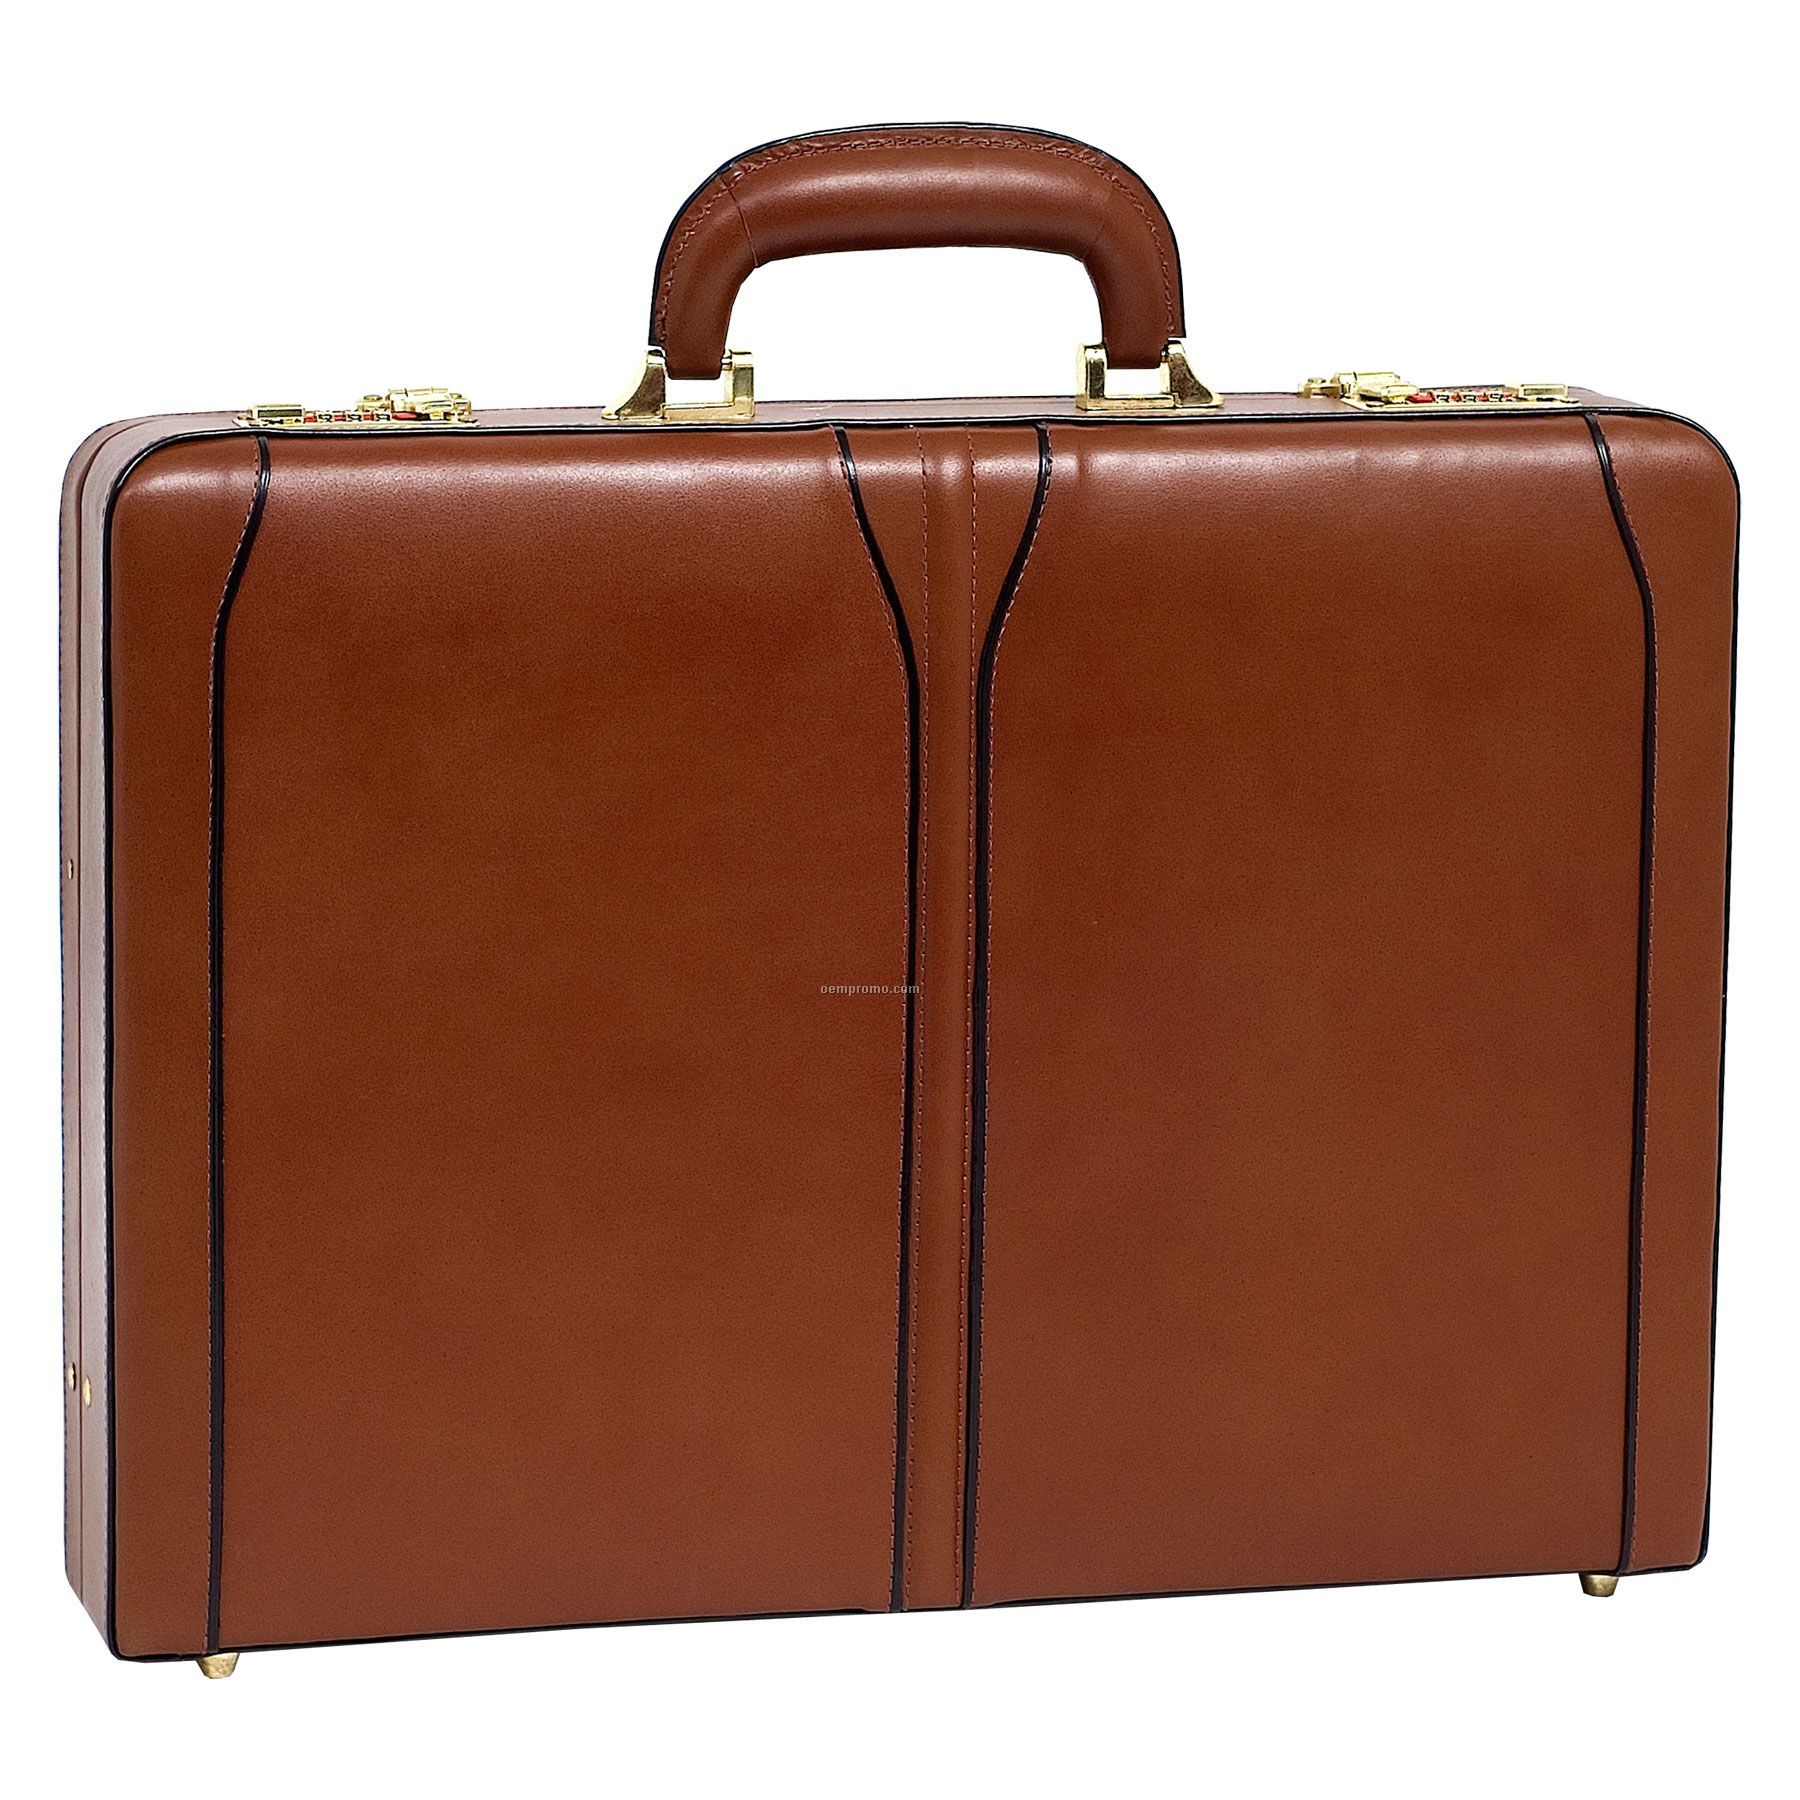 Lawson Leather Attache Case - Brown